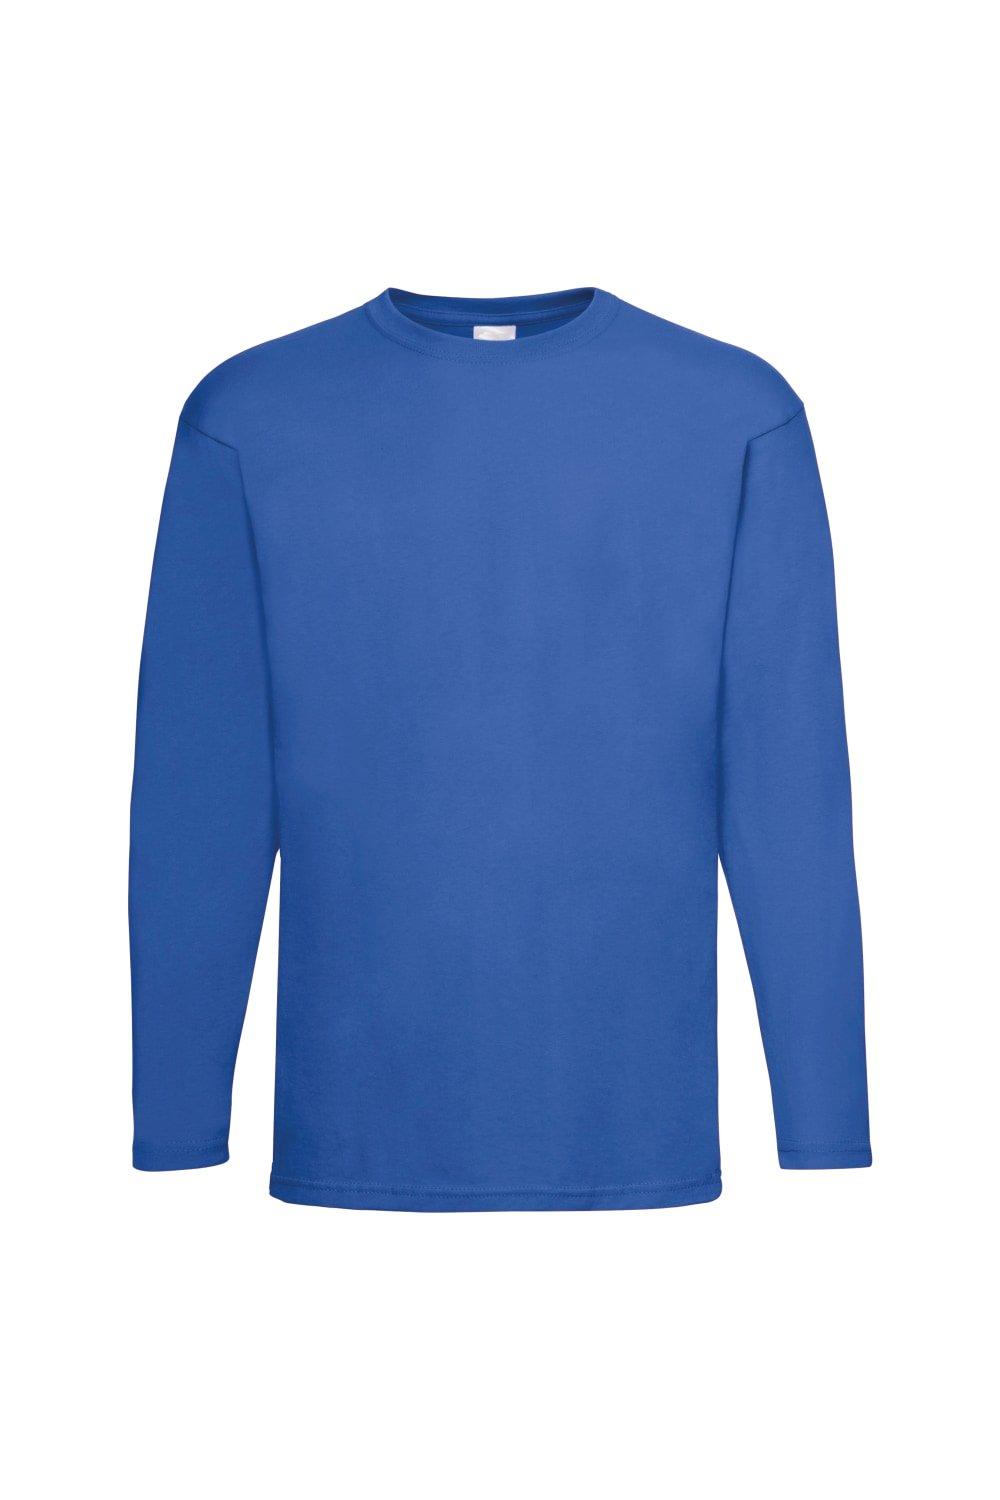 Повседневная футболка Value с длинным рукавом Universal Textiles, синий мужская футболка лиса русская краса xl серый меланж